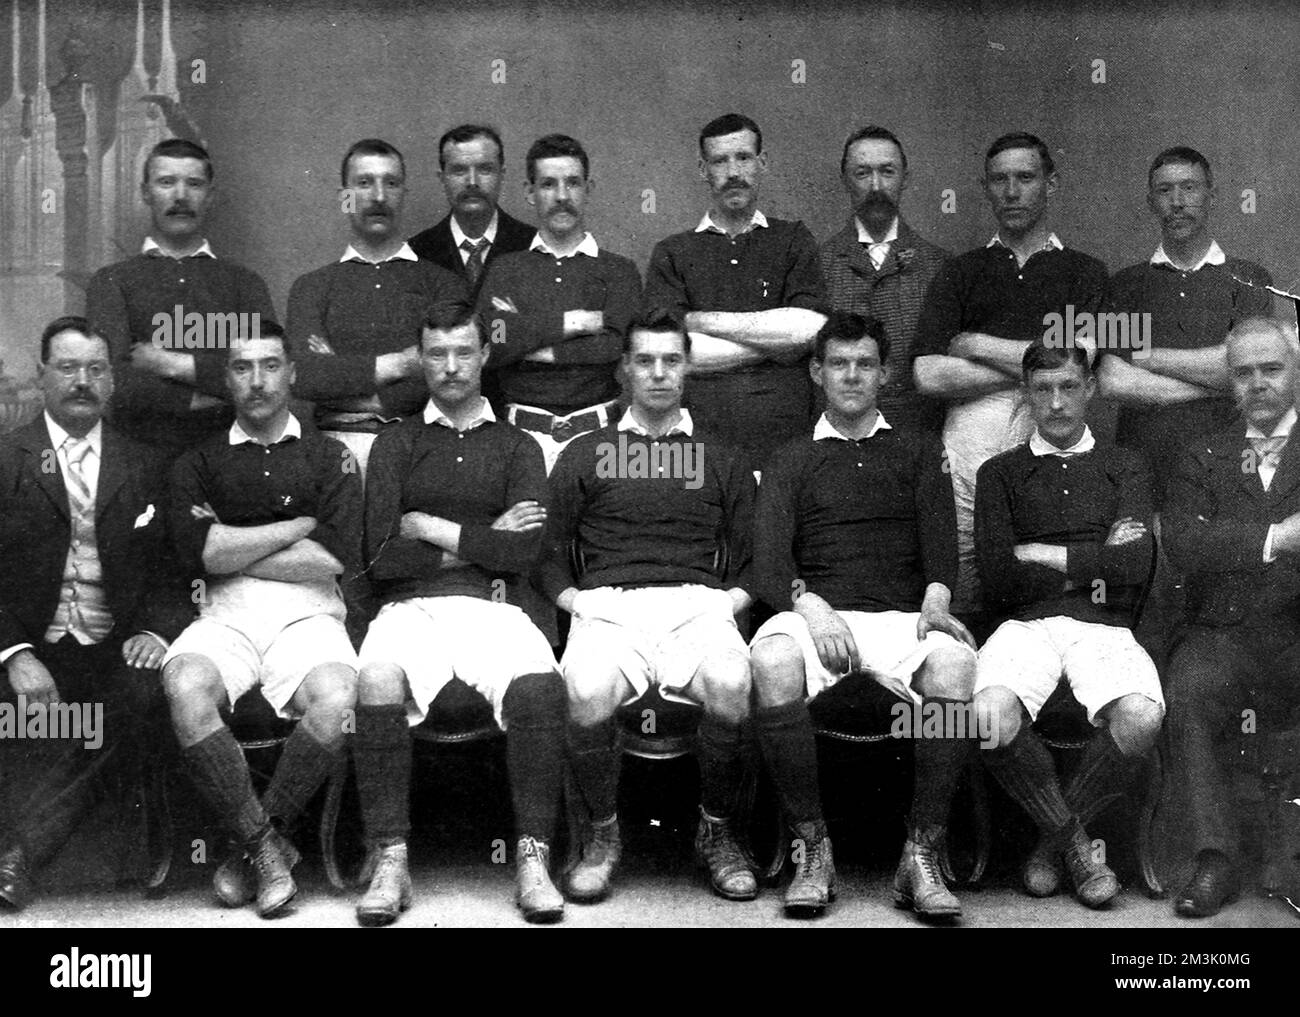 Scotland International Football Team selezionato per la partita contro l'Inghilterra nel 1897. Il 3rd aprile di quell'anno hanno battuto l'Inghilterra 2-1 nel British International Championship. L'immagine mostra: Riga posteriore, da sinistra a destra: N. Smith (Rangers), J. Patrick (St. Mirren), J. Aitkin (Trainer), J. Bell (Everton), T.Hyslop (Rangers), J.K. McDowall (Segretario dell'SFA), G. Allan (Liverpool), H. Wilson (Sunderland). Prima fila, da sinistra a destra: W. Crichton (presidente della SFA), J. Cowan (Aston Villa), J. Miller (Rangers), W.A. Lambie (Queen's Park), D.Doyle (Celtic), N. Gibson (Rangers), D. McKenzie (Vice Foto Stock